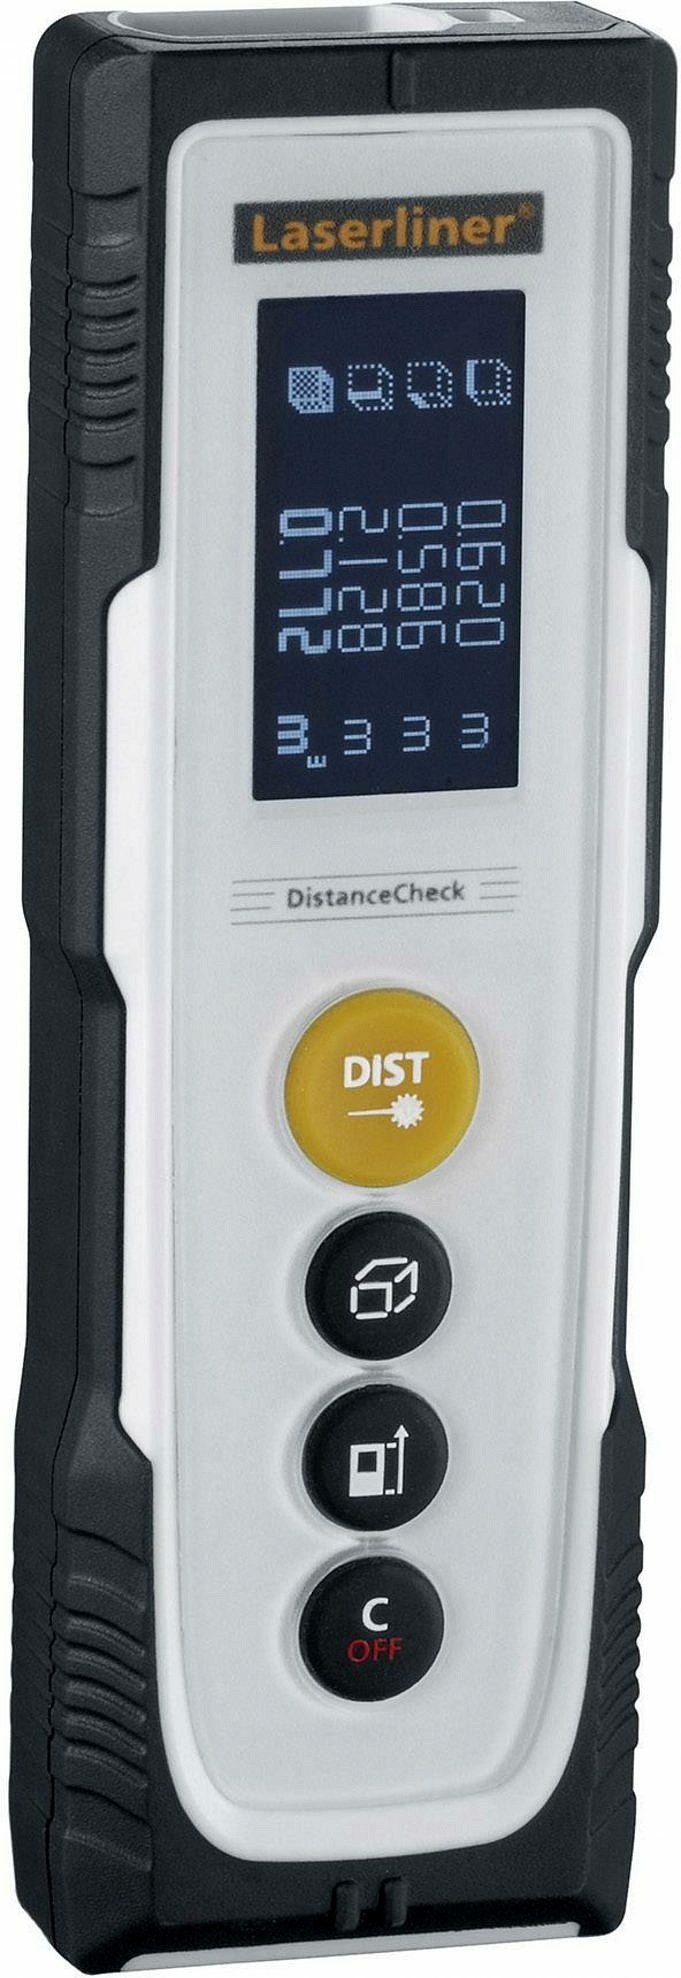 Laser Liner DistanceMaster Pro - Misuratore Di Distanza Laser